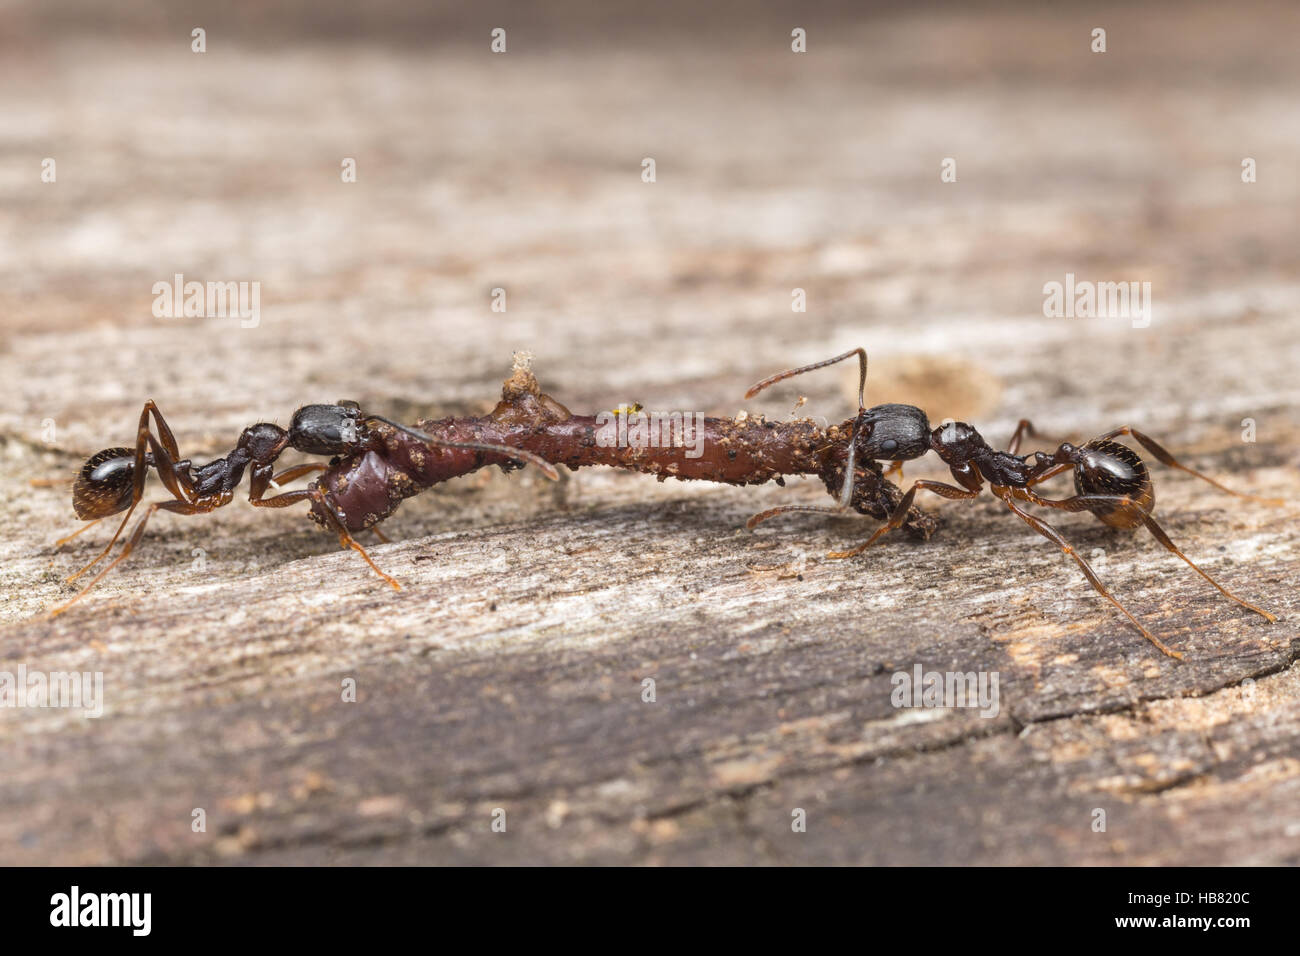 Deux à taille de la colonne vertébrale (Fourmi Aphaenogaster picea) des travailleurs portent la nourriture récupérée, un ver de terre, jusqu'à leur nid. Banque D'Images